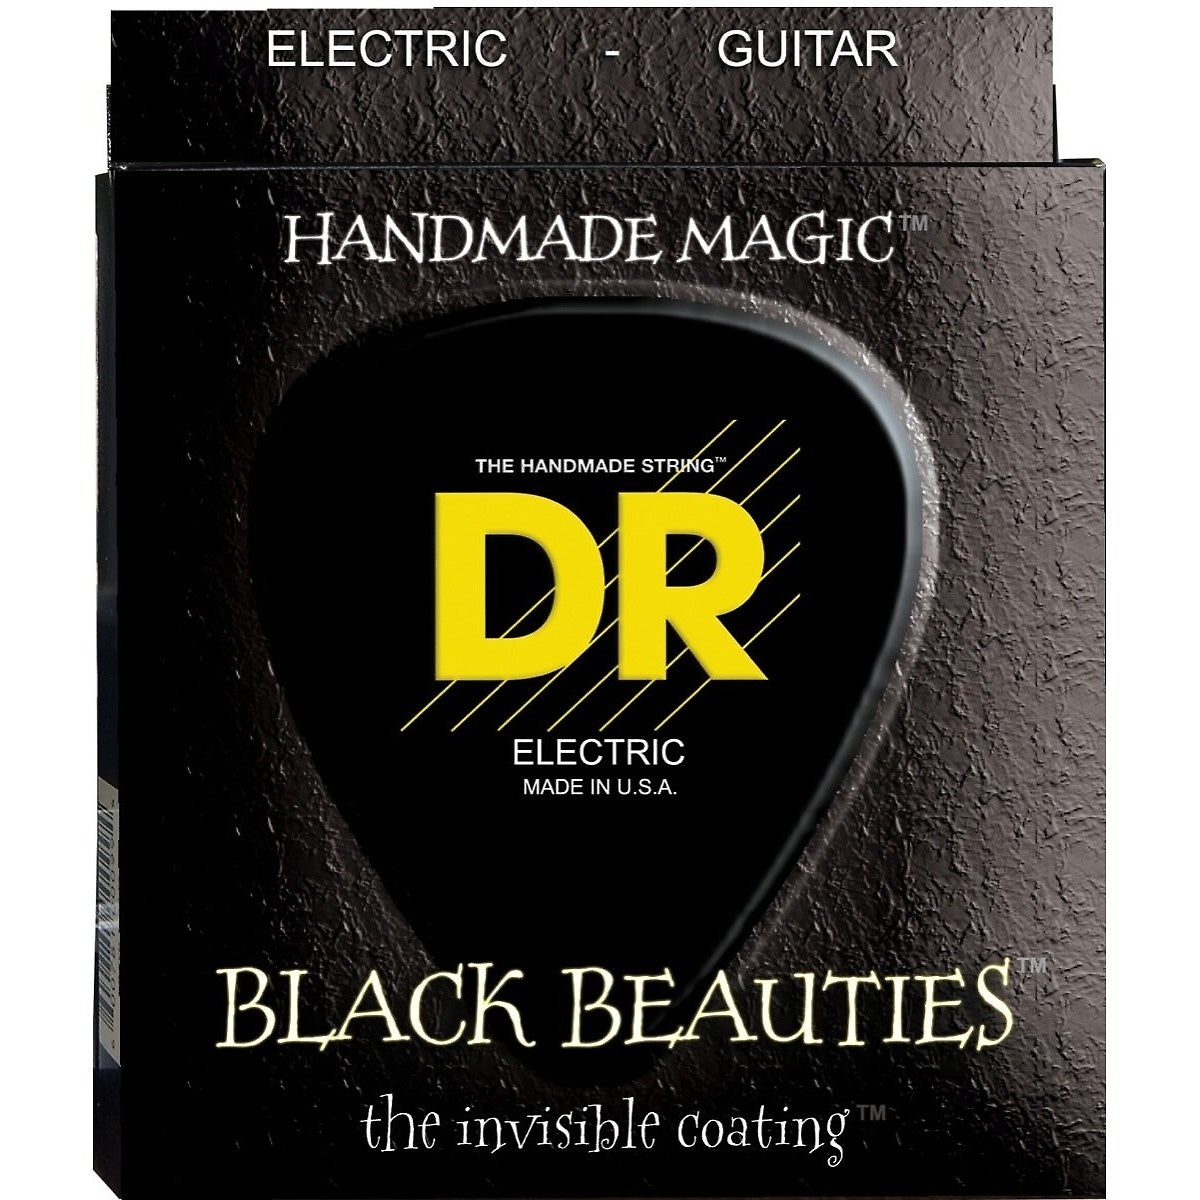 DR Strings Black Beauties Electric Guitar Strings, BKE-9, Lite, 15585